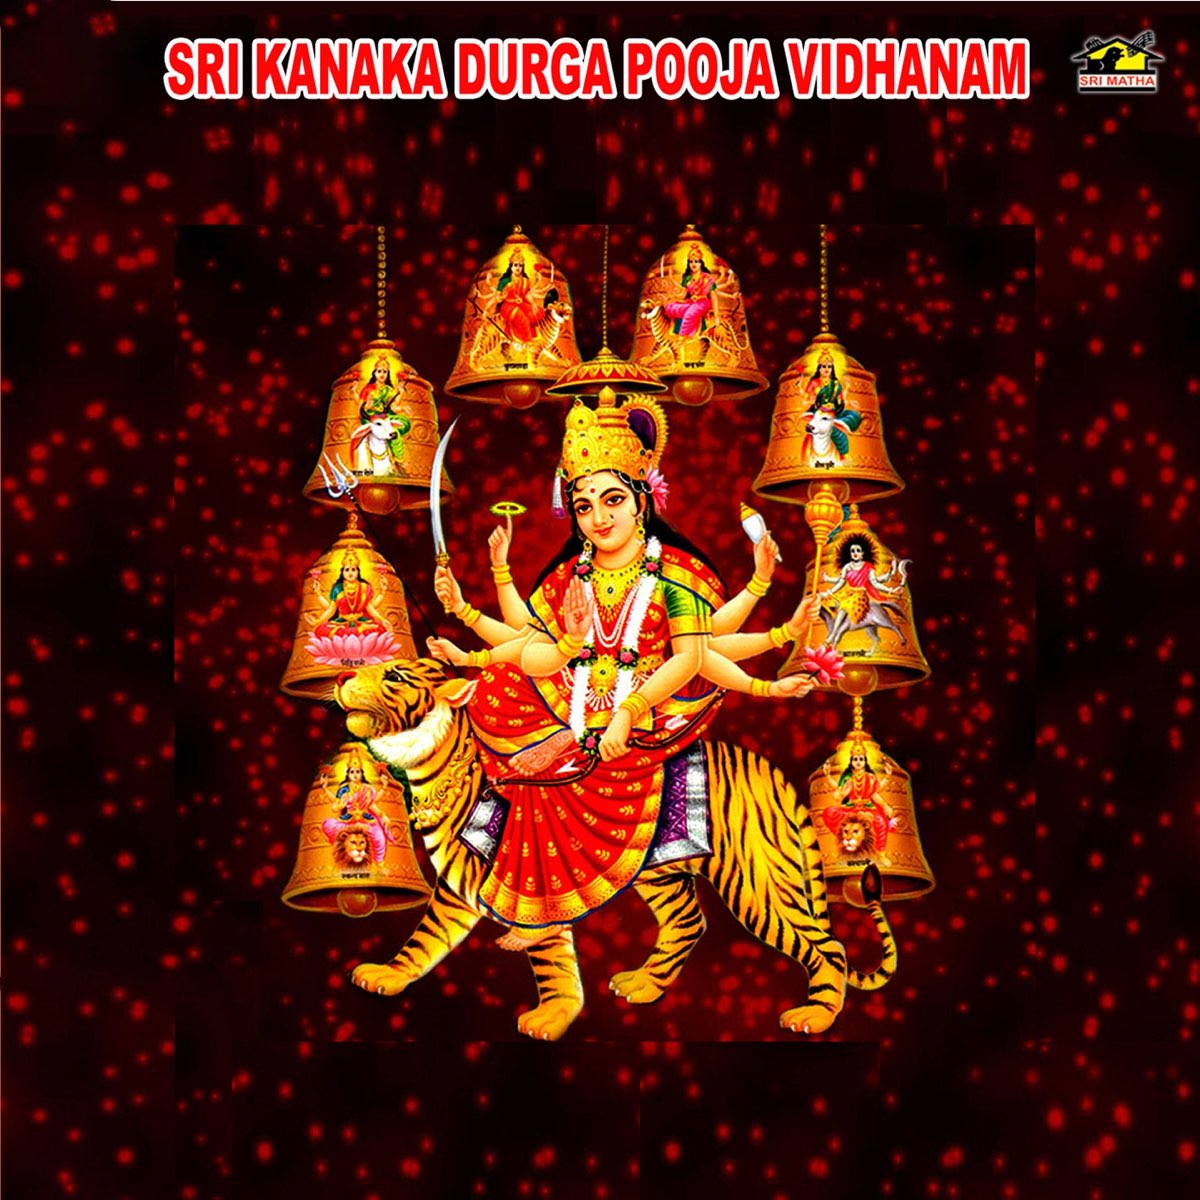 Sri Kanaka Durga Pooja Vidhanam by T. Srinivas & Muralidhara ...